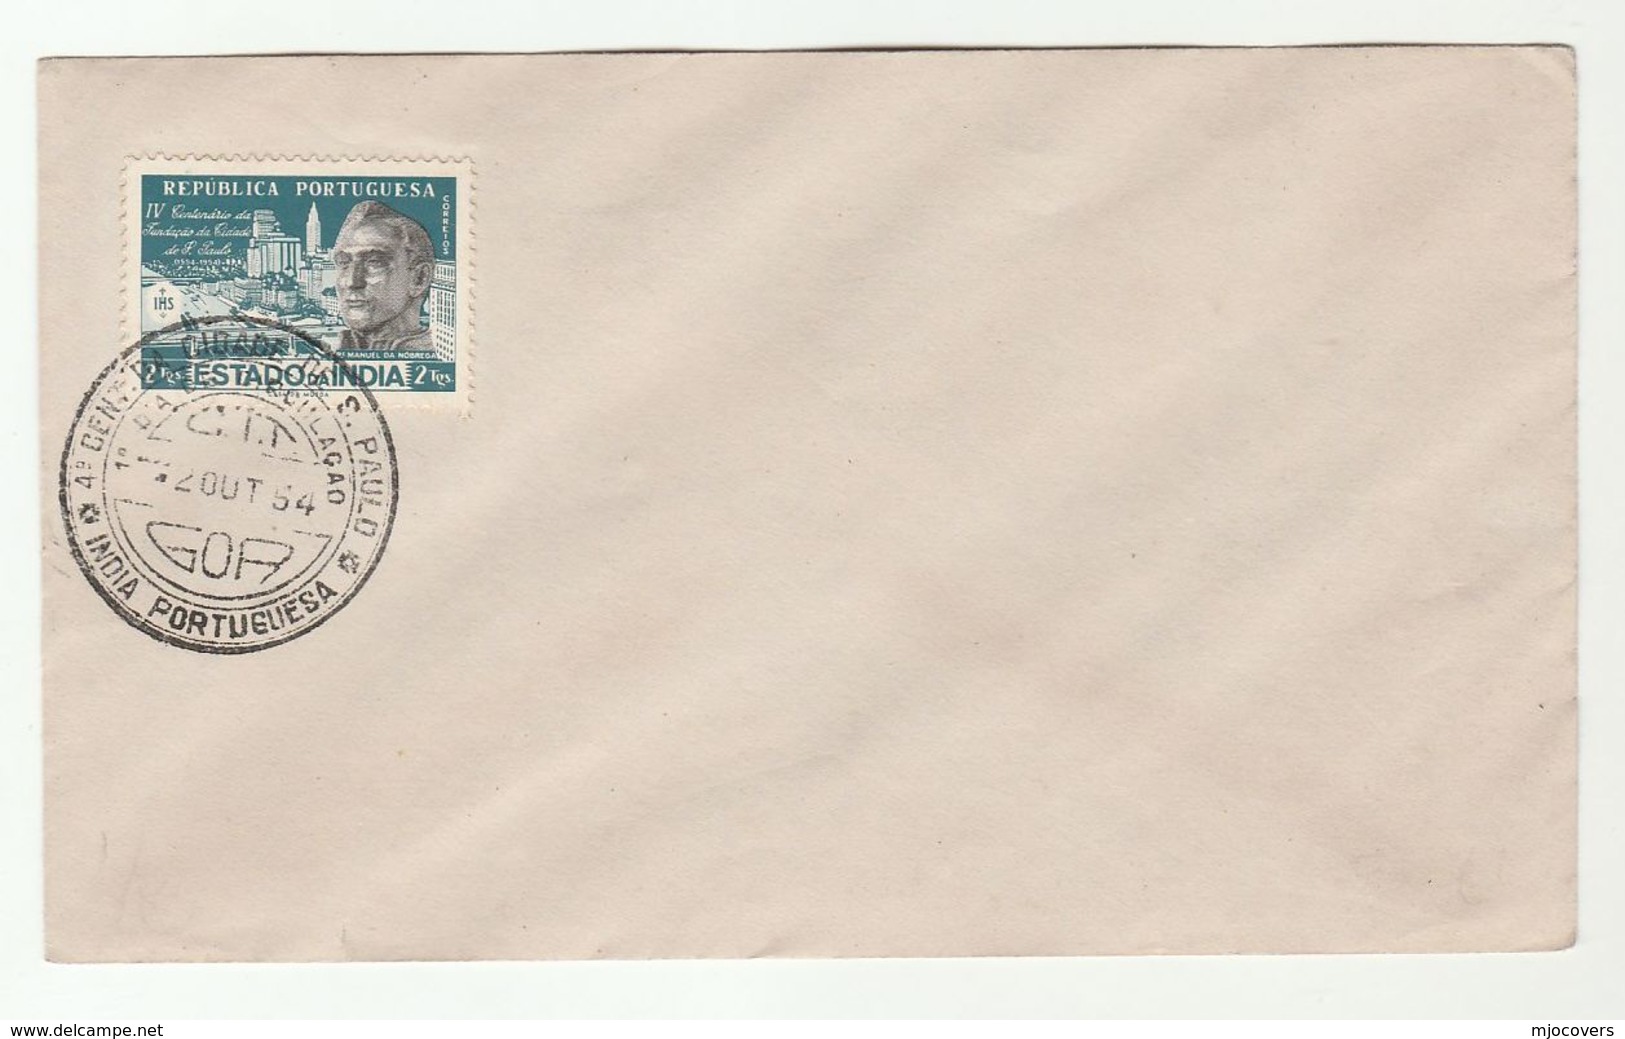 1954 PORTUGUESE INDIA FDC Cidade De S. Paulo Stamps Cover - Portuguese India